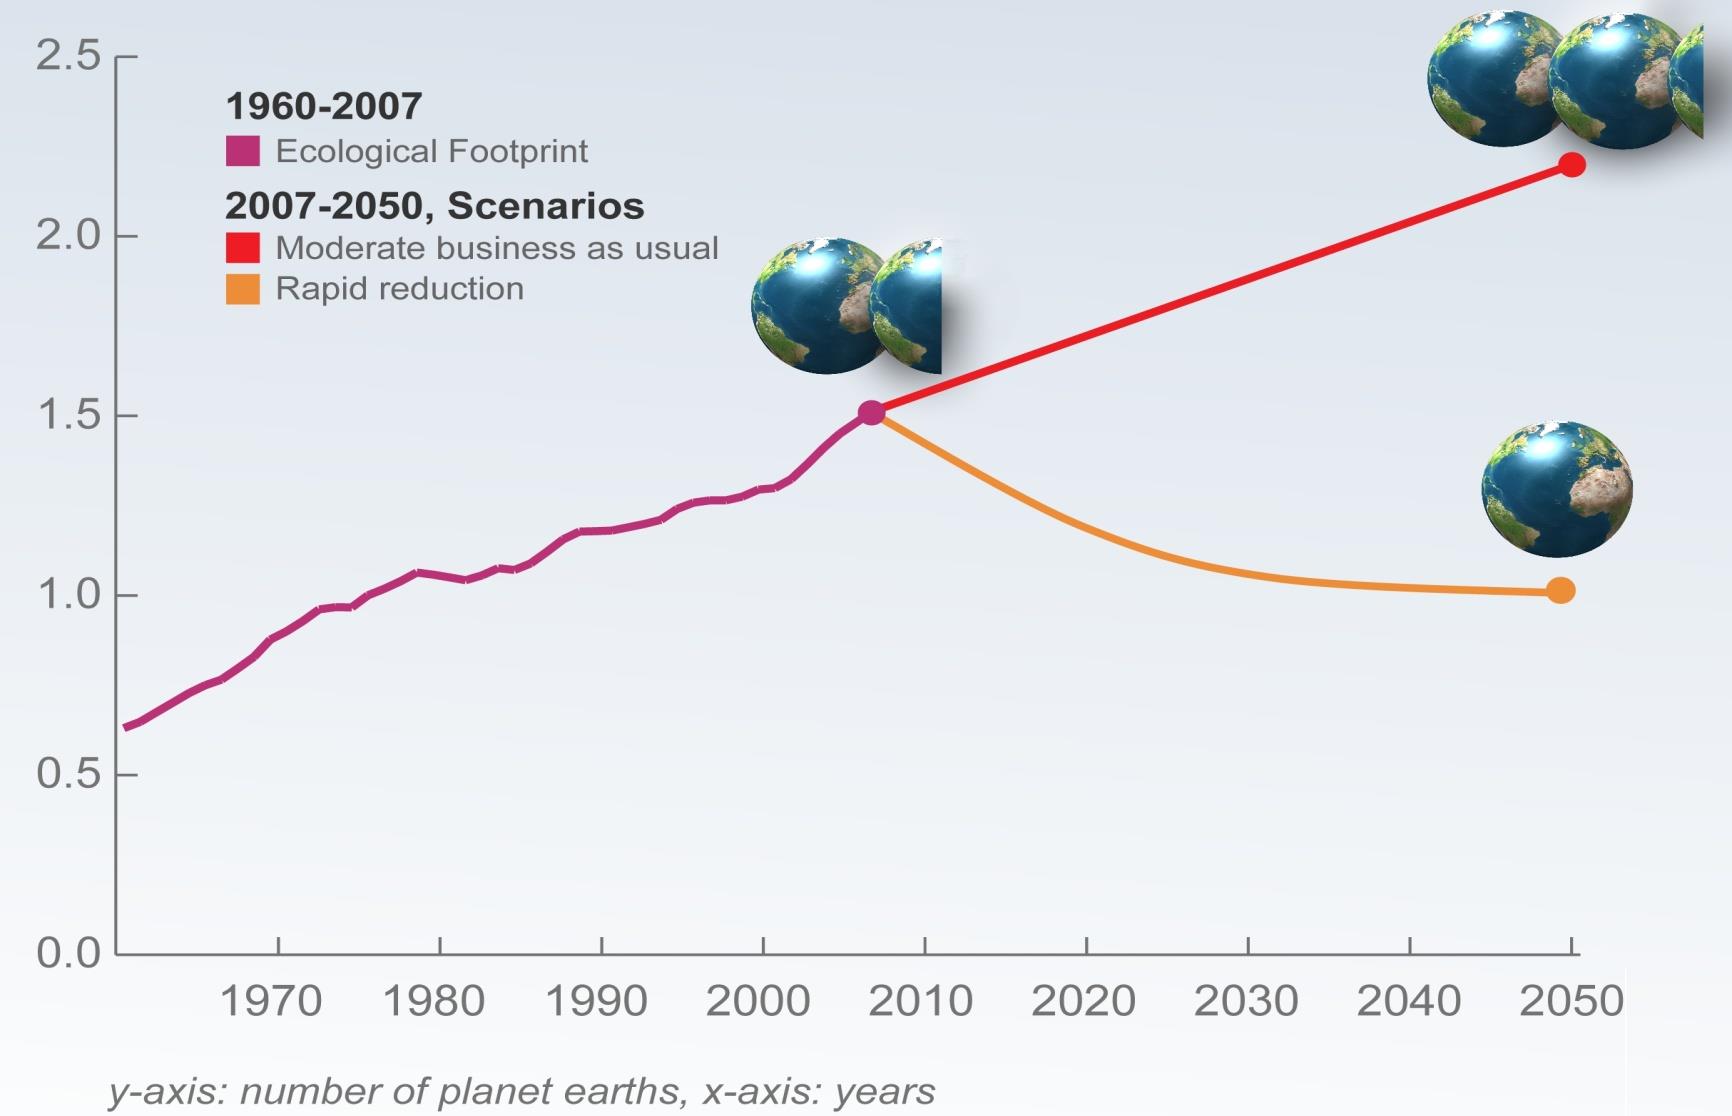 Se requerirá un poco mas de 2 planetas para 2050 http://www.